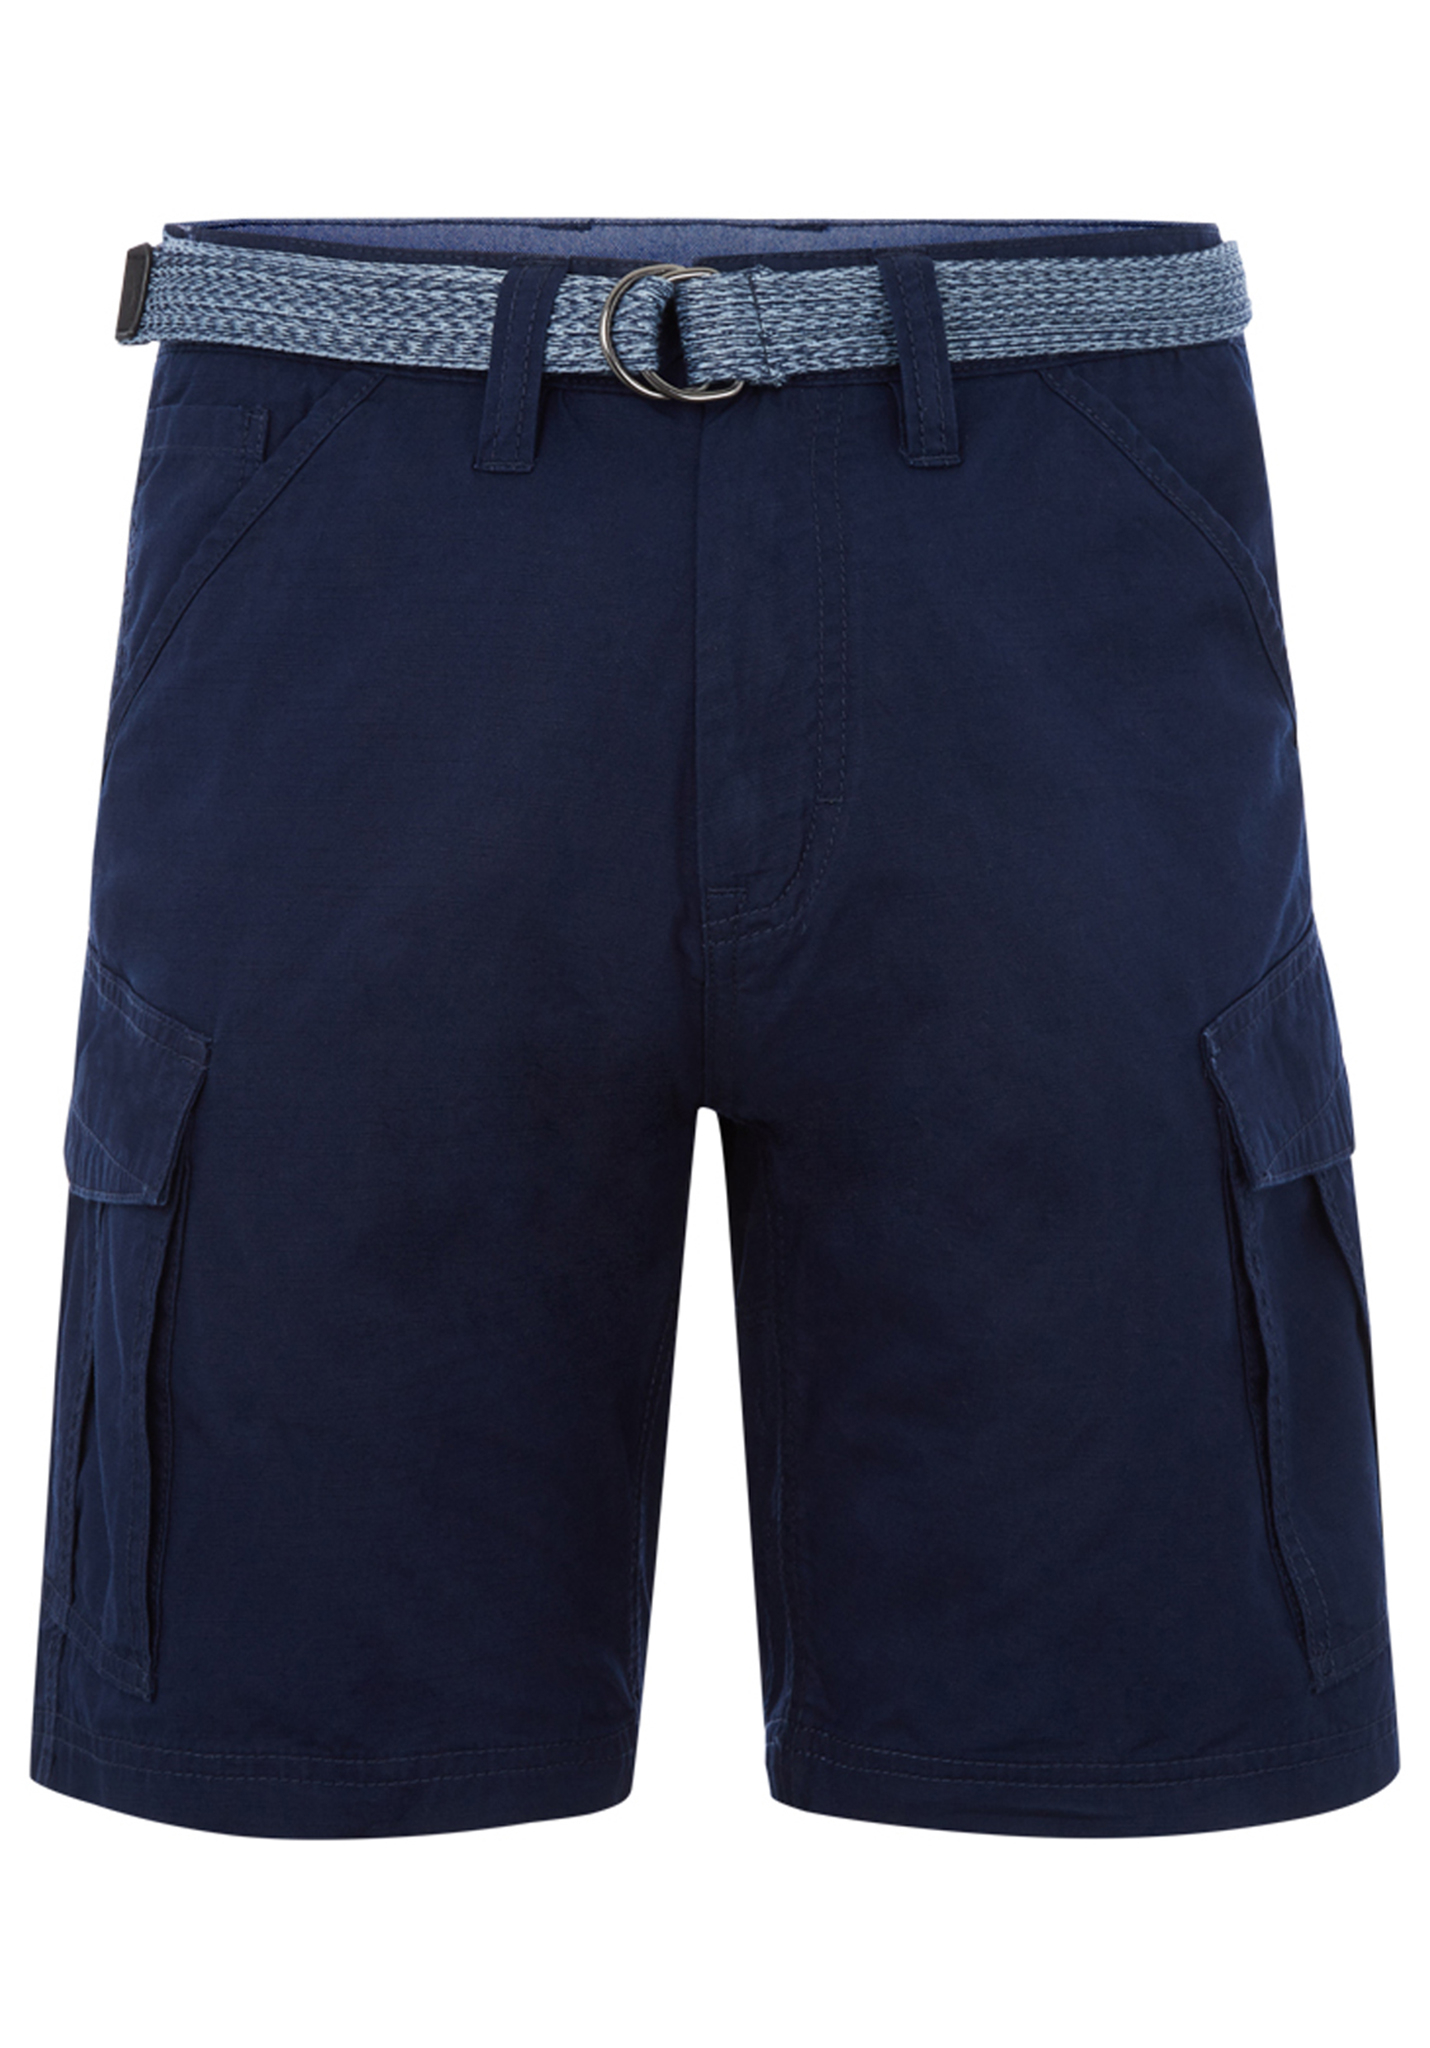 O'Neill Filbert Shorts blau 38/XX